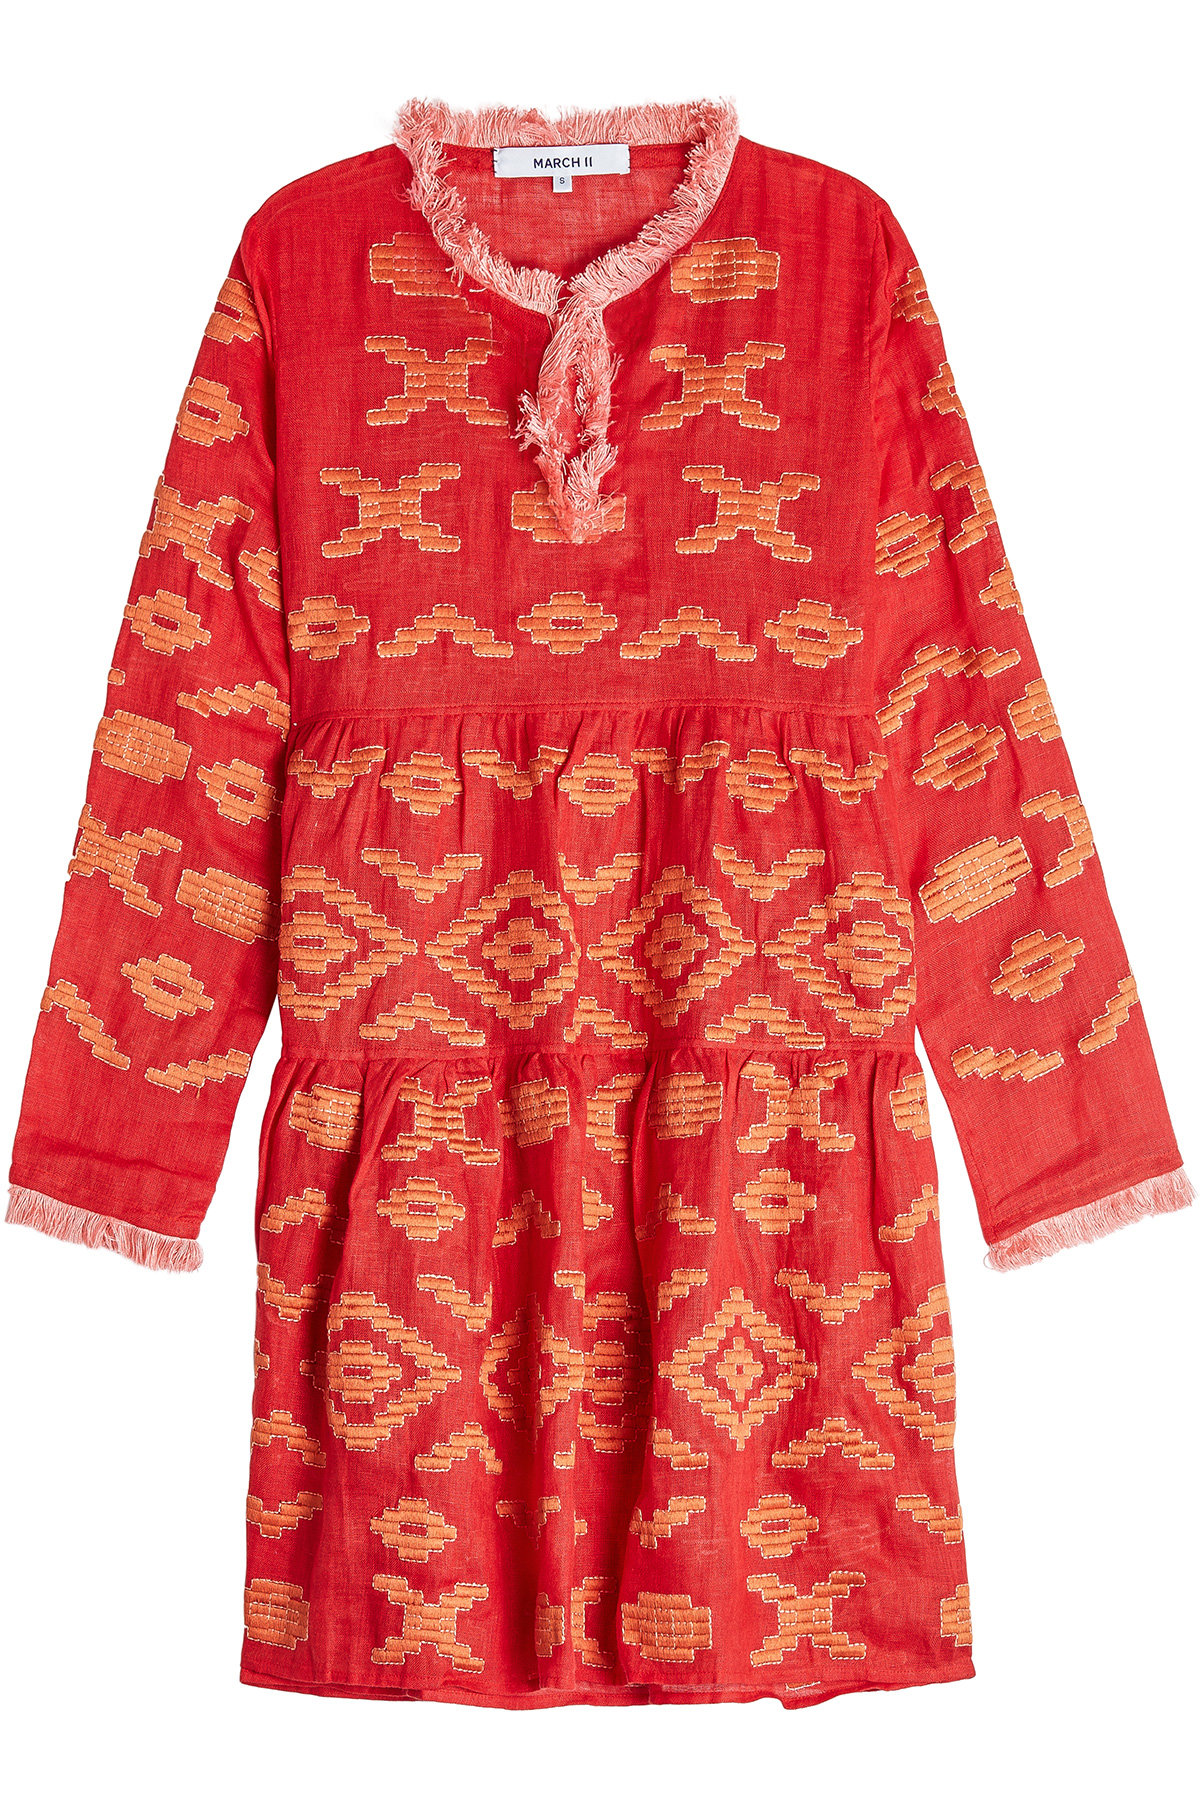 MARCH11 - Serena Embroidered Linen Mini Dress